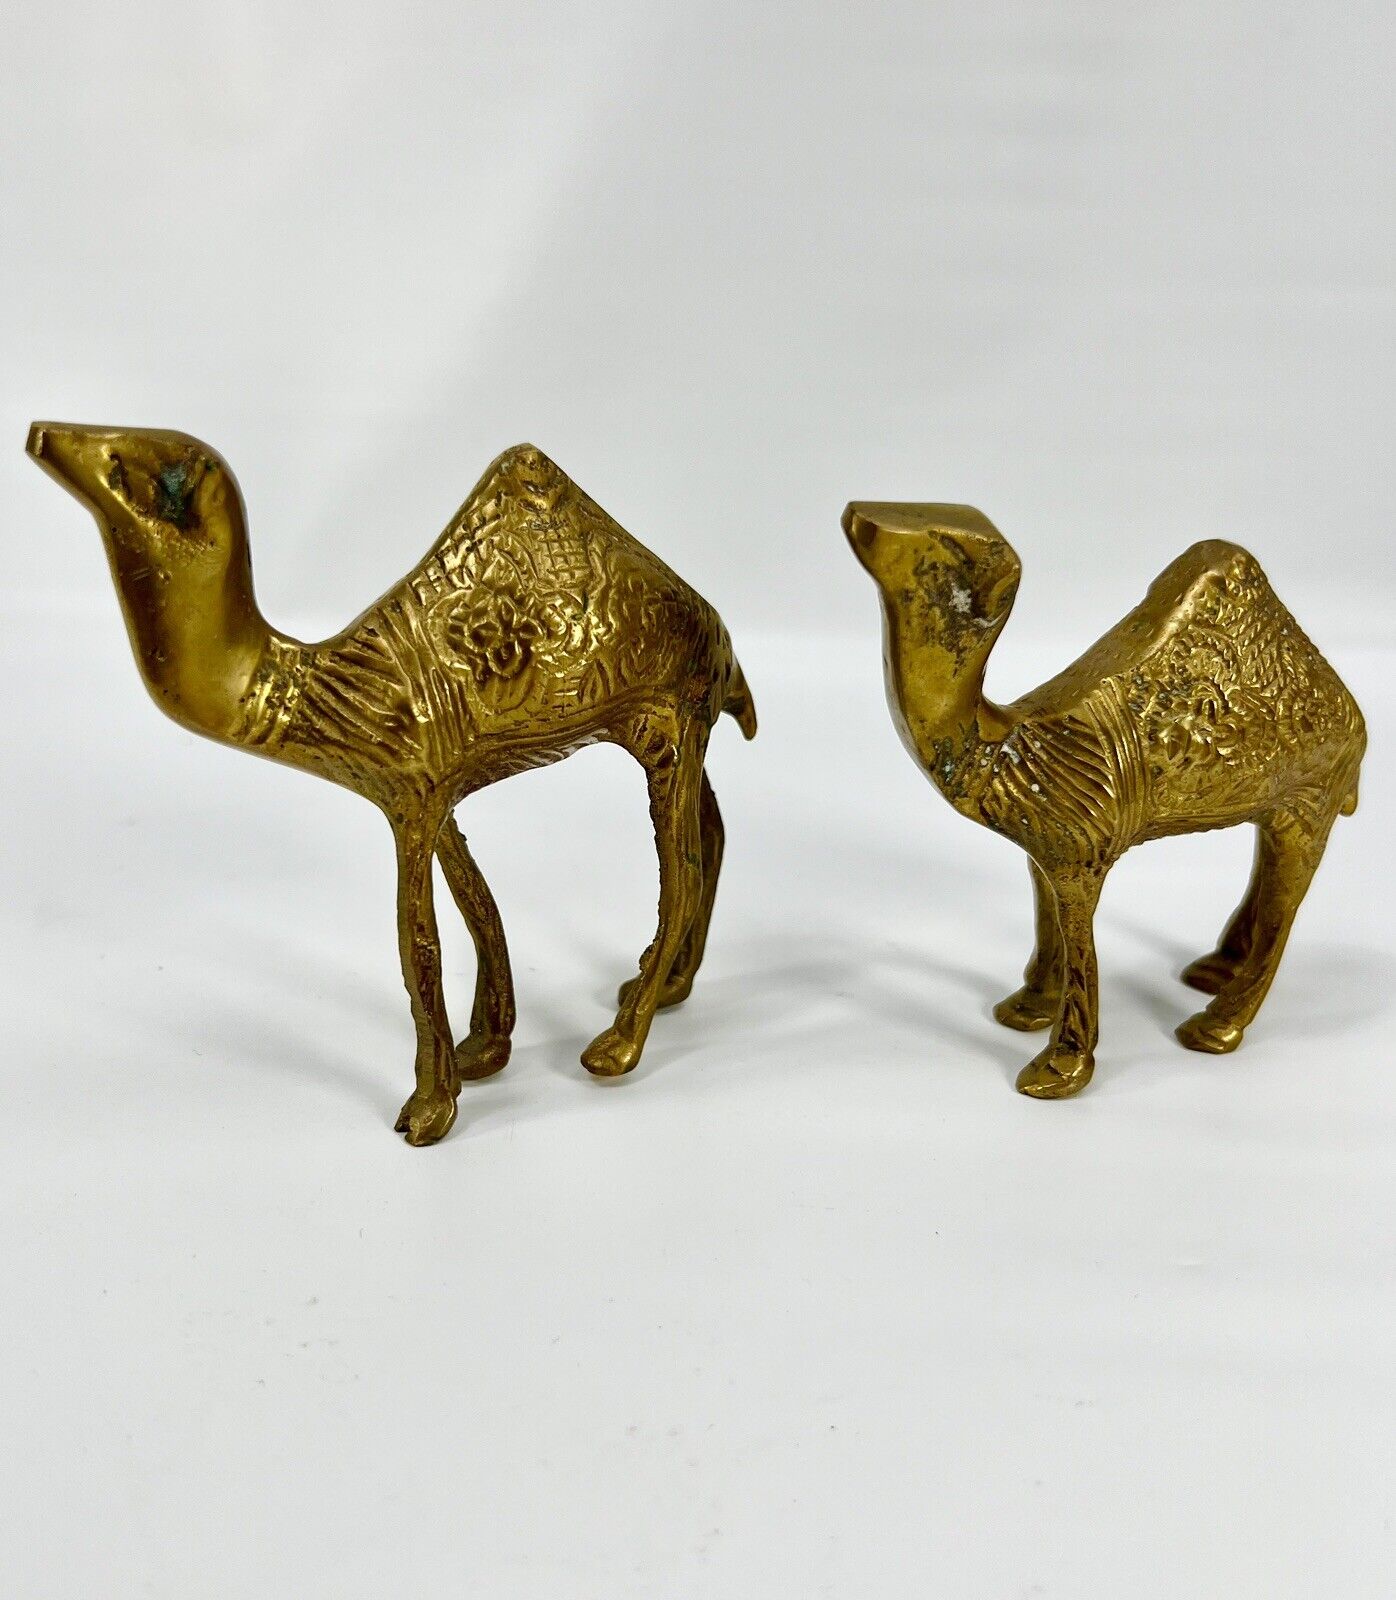 2- Vintage Etched Solid Brass Camel Figurine Middle East Decor Art Sculpture